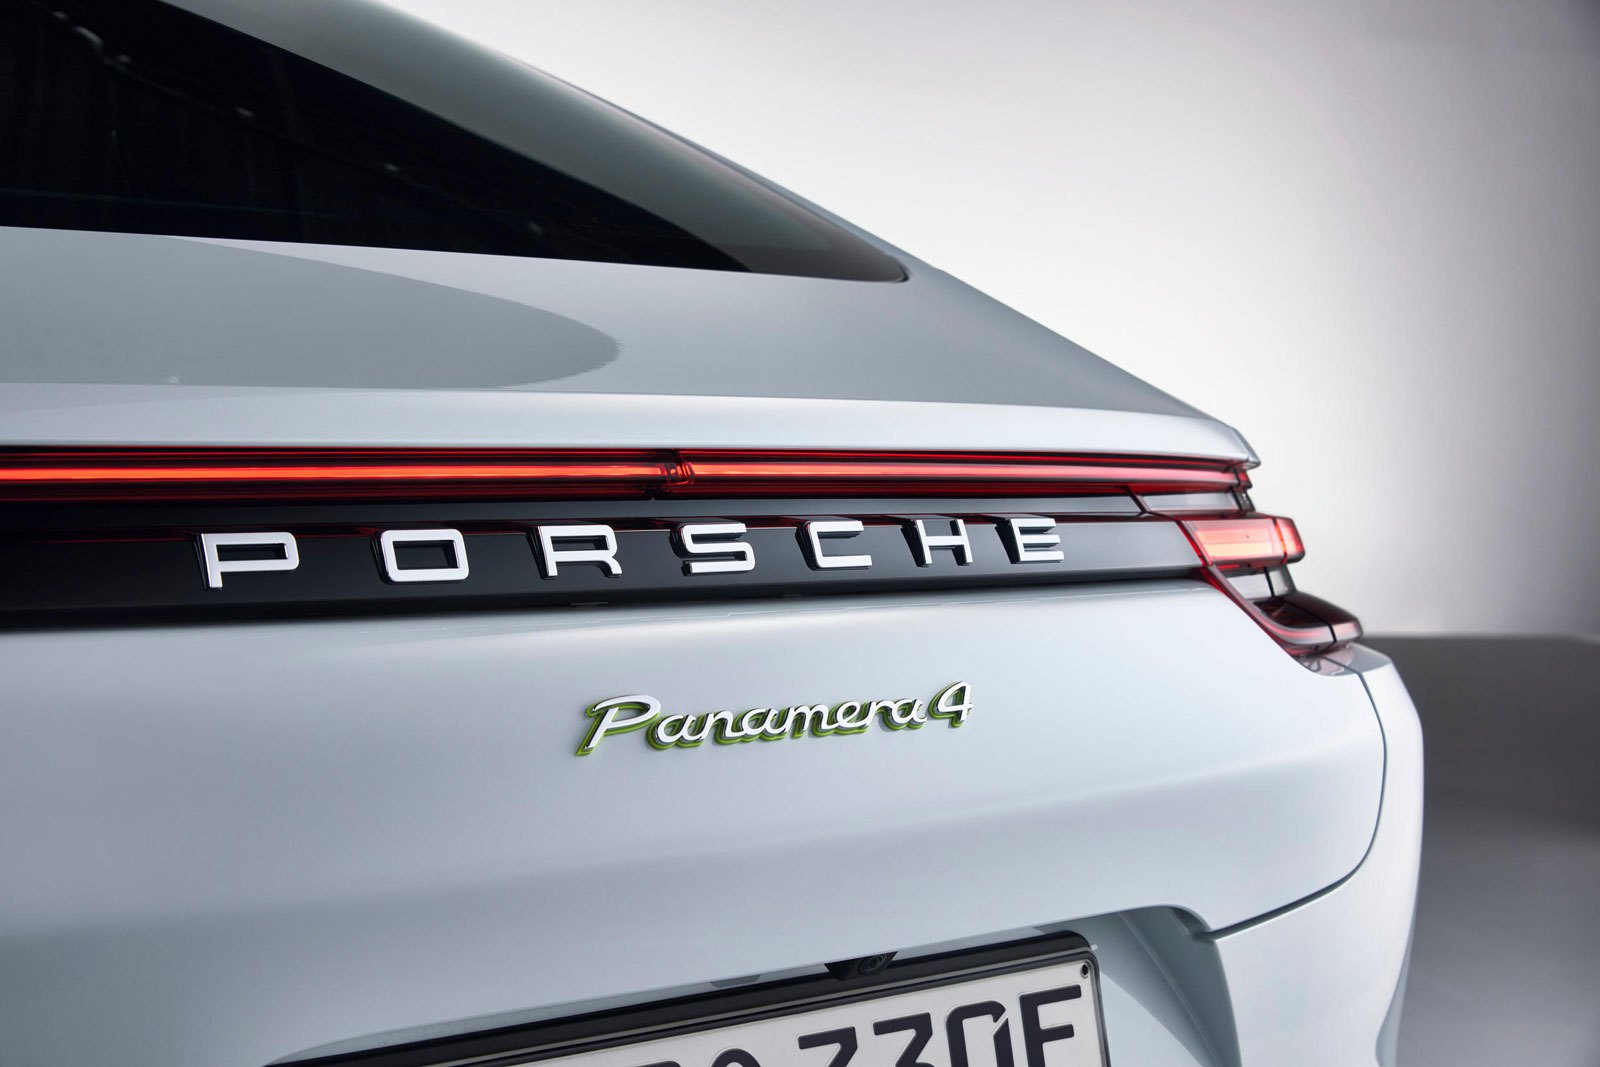 Porsche Panamera 4 E-Hybrid: спортивный фастбэк с бензо-электрической силовой установкой